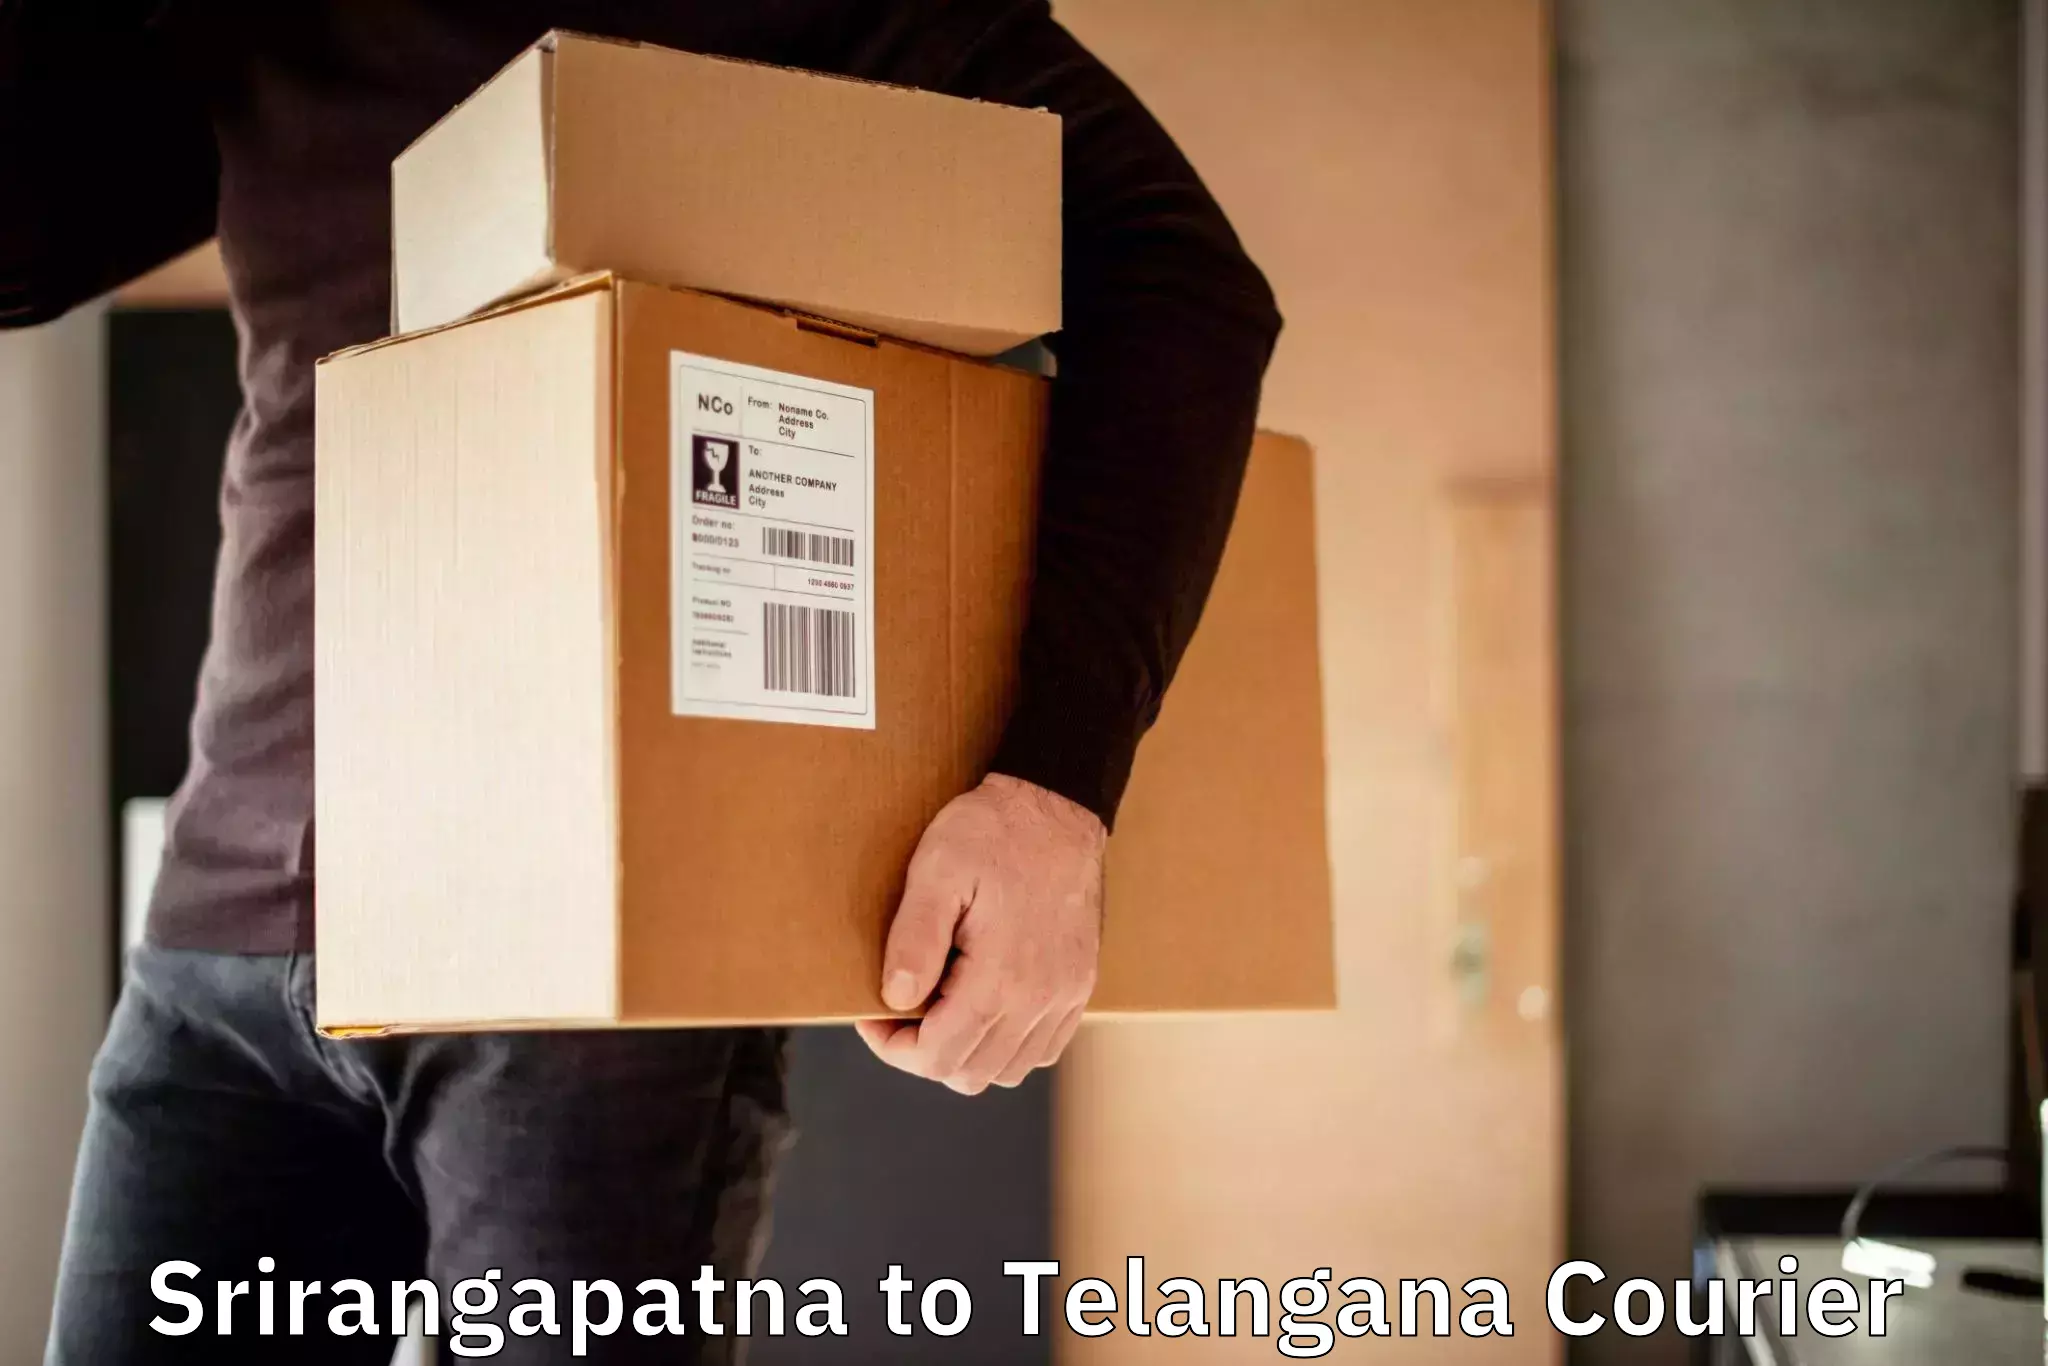 International courier networks Srirangapatna to Haliya